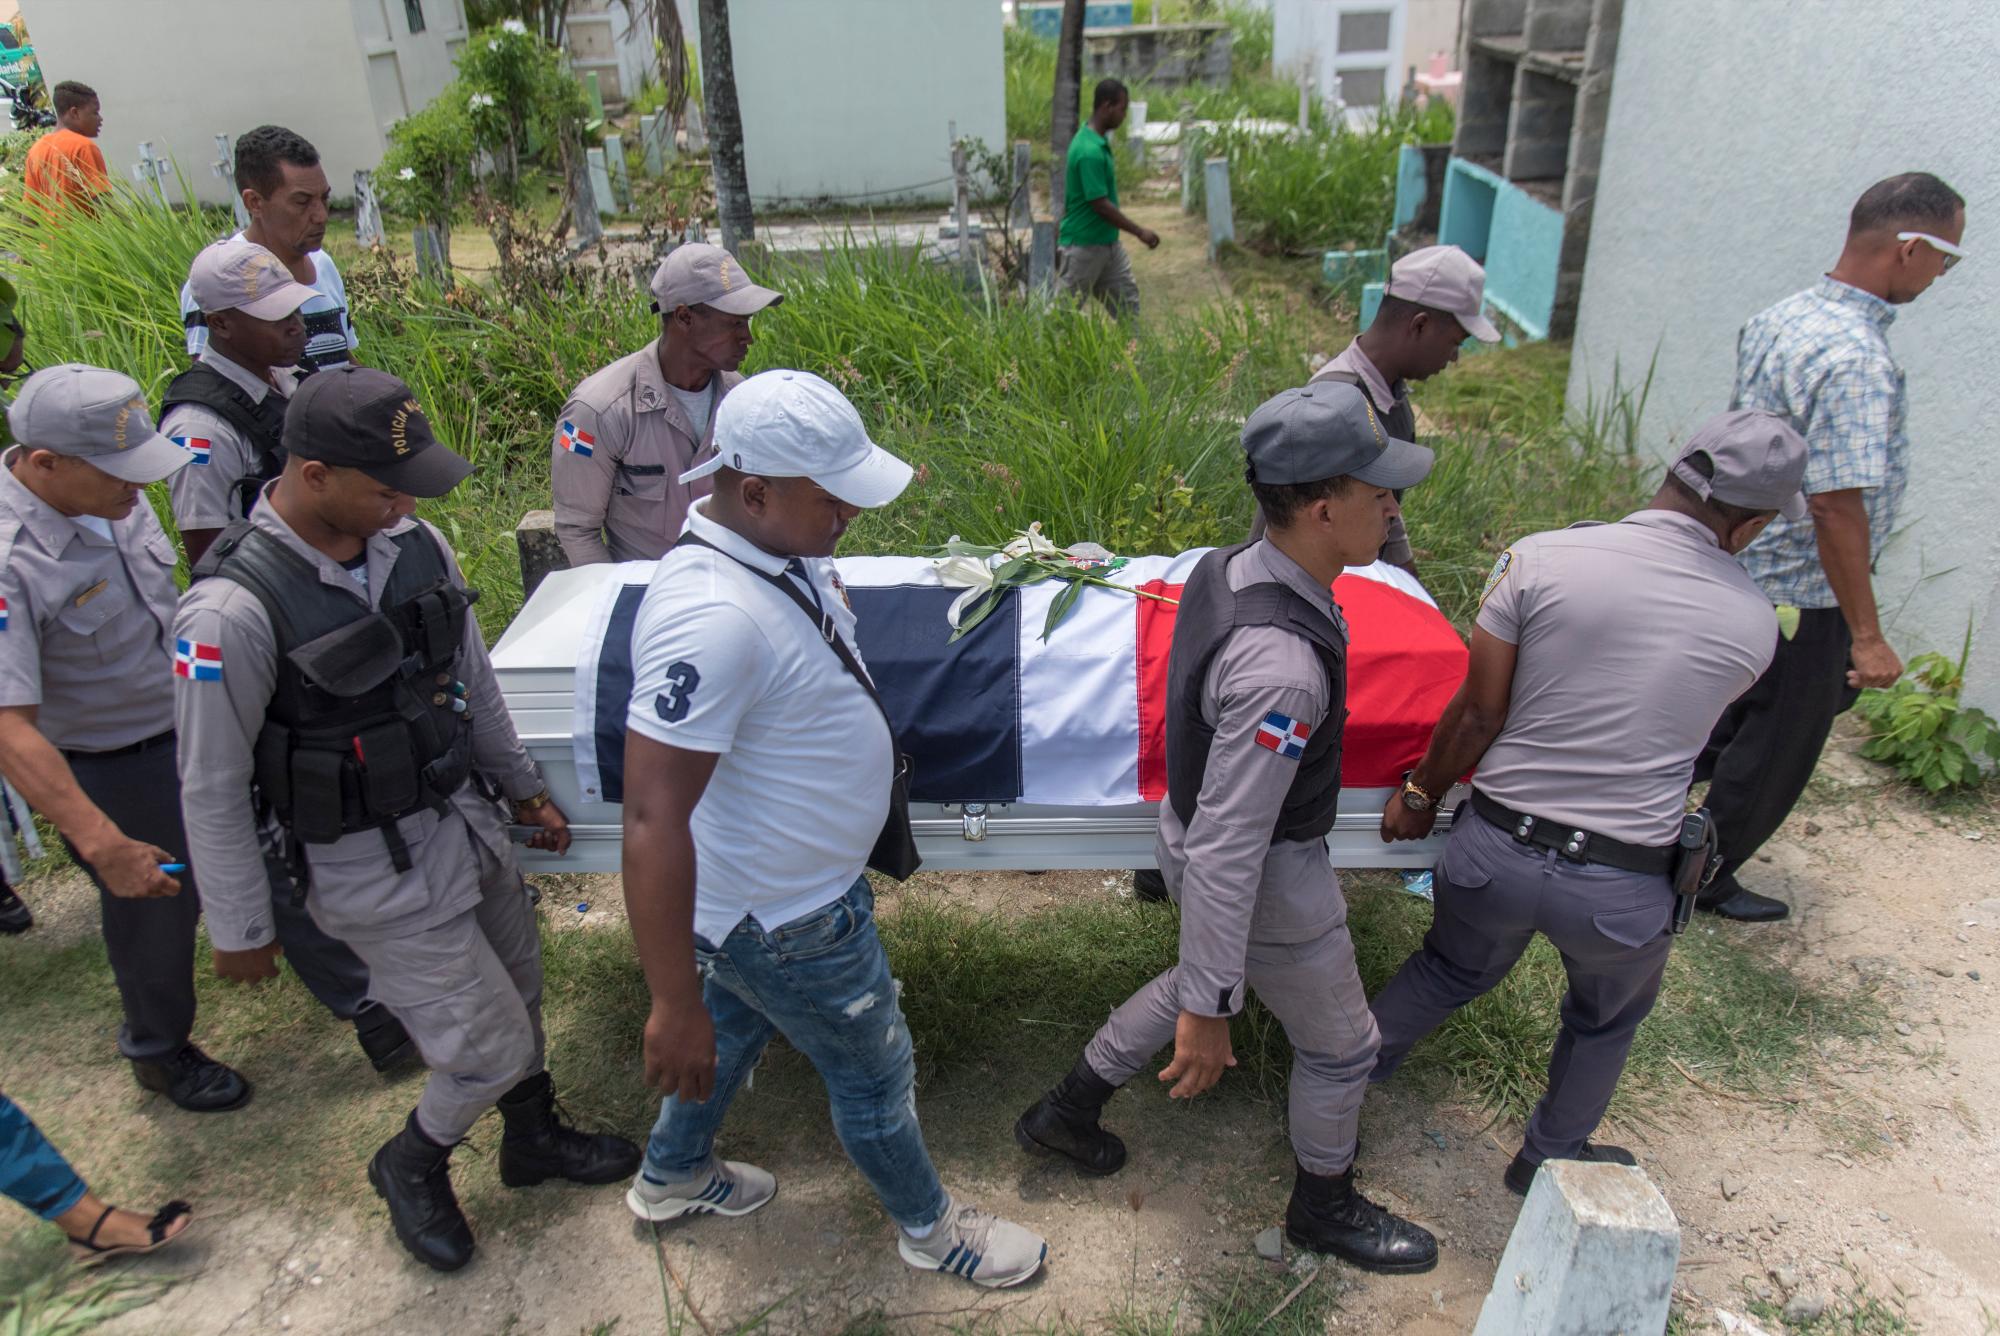 Los restos del cabo de la Policía Nacional Chistopel Turbi Ruíz, de 28 años, que fe ultimado la noche del martes en Villa Mella para quitarle su arma de reglamento son llevados al cementerio el jueves, 04 de julio de 2019